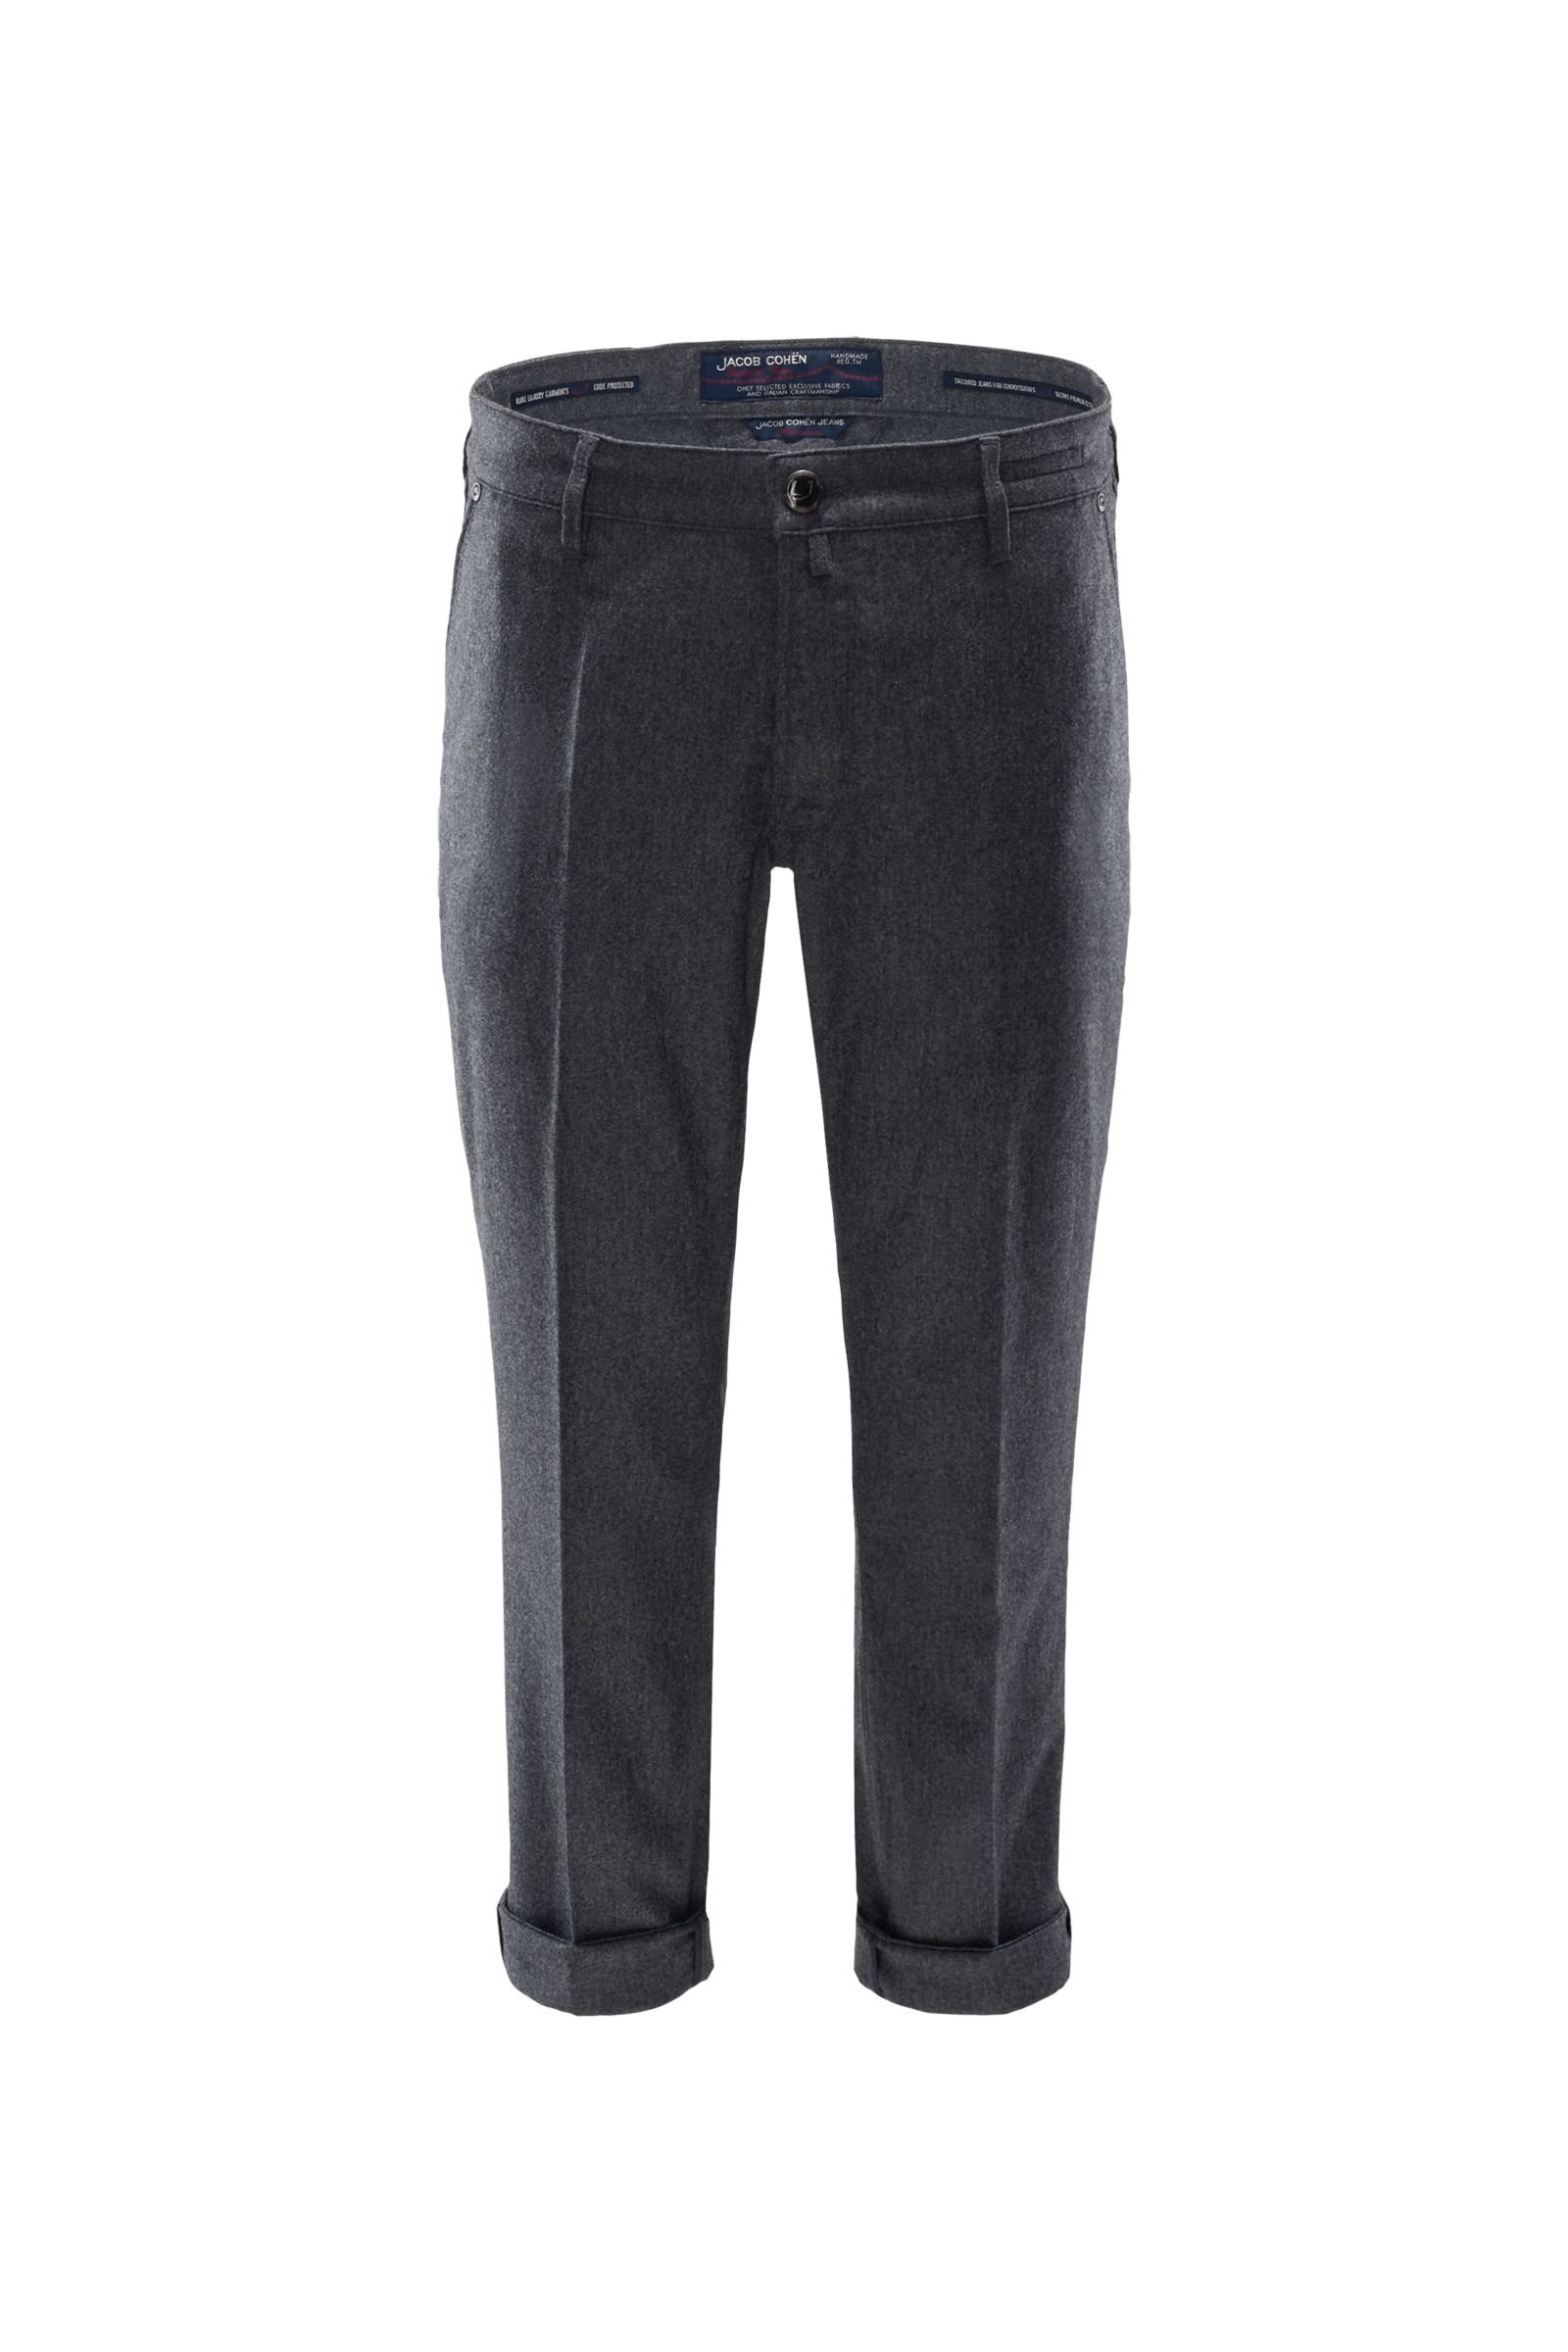 Wool trousers 'J666 Wool B Comfort Slim Fit' dark grey